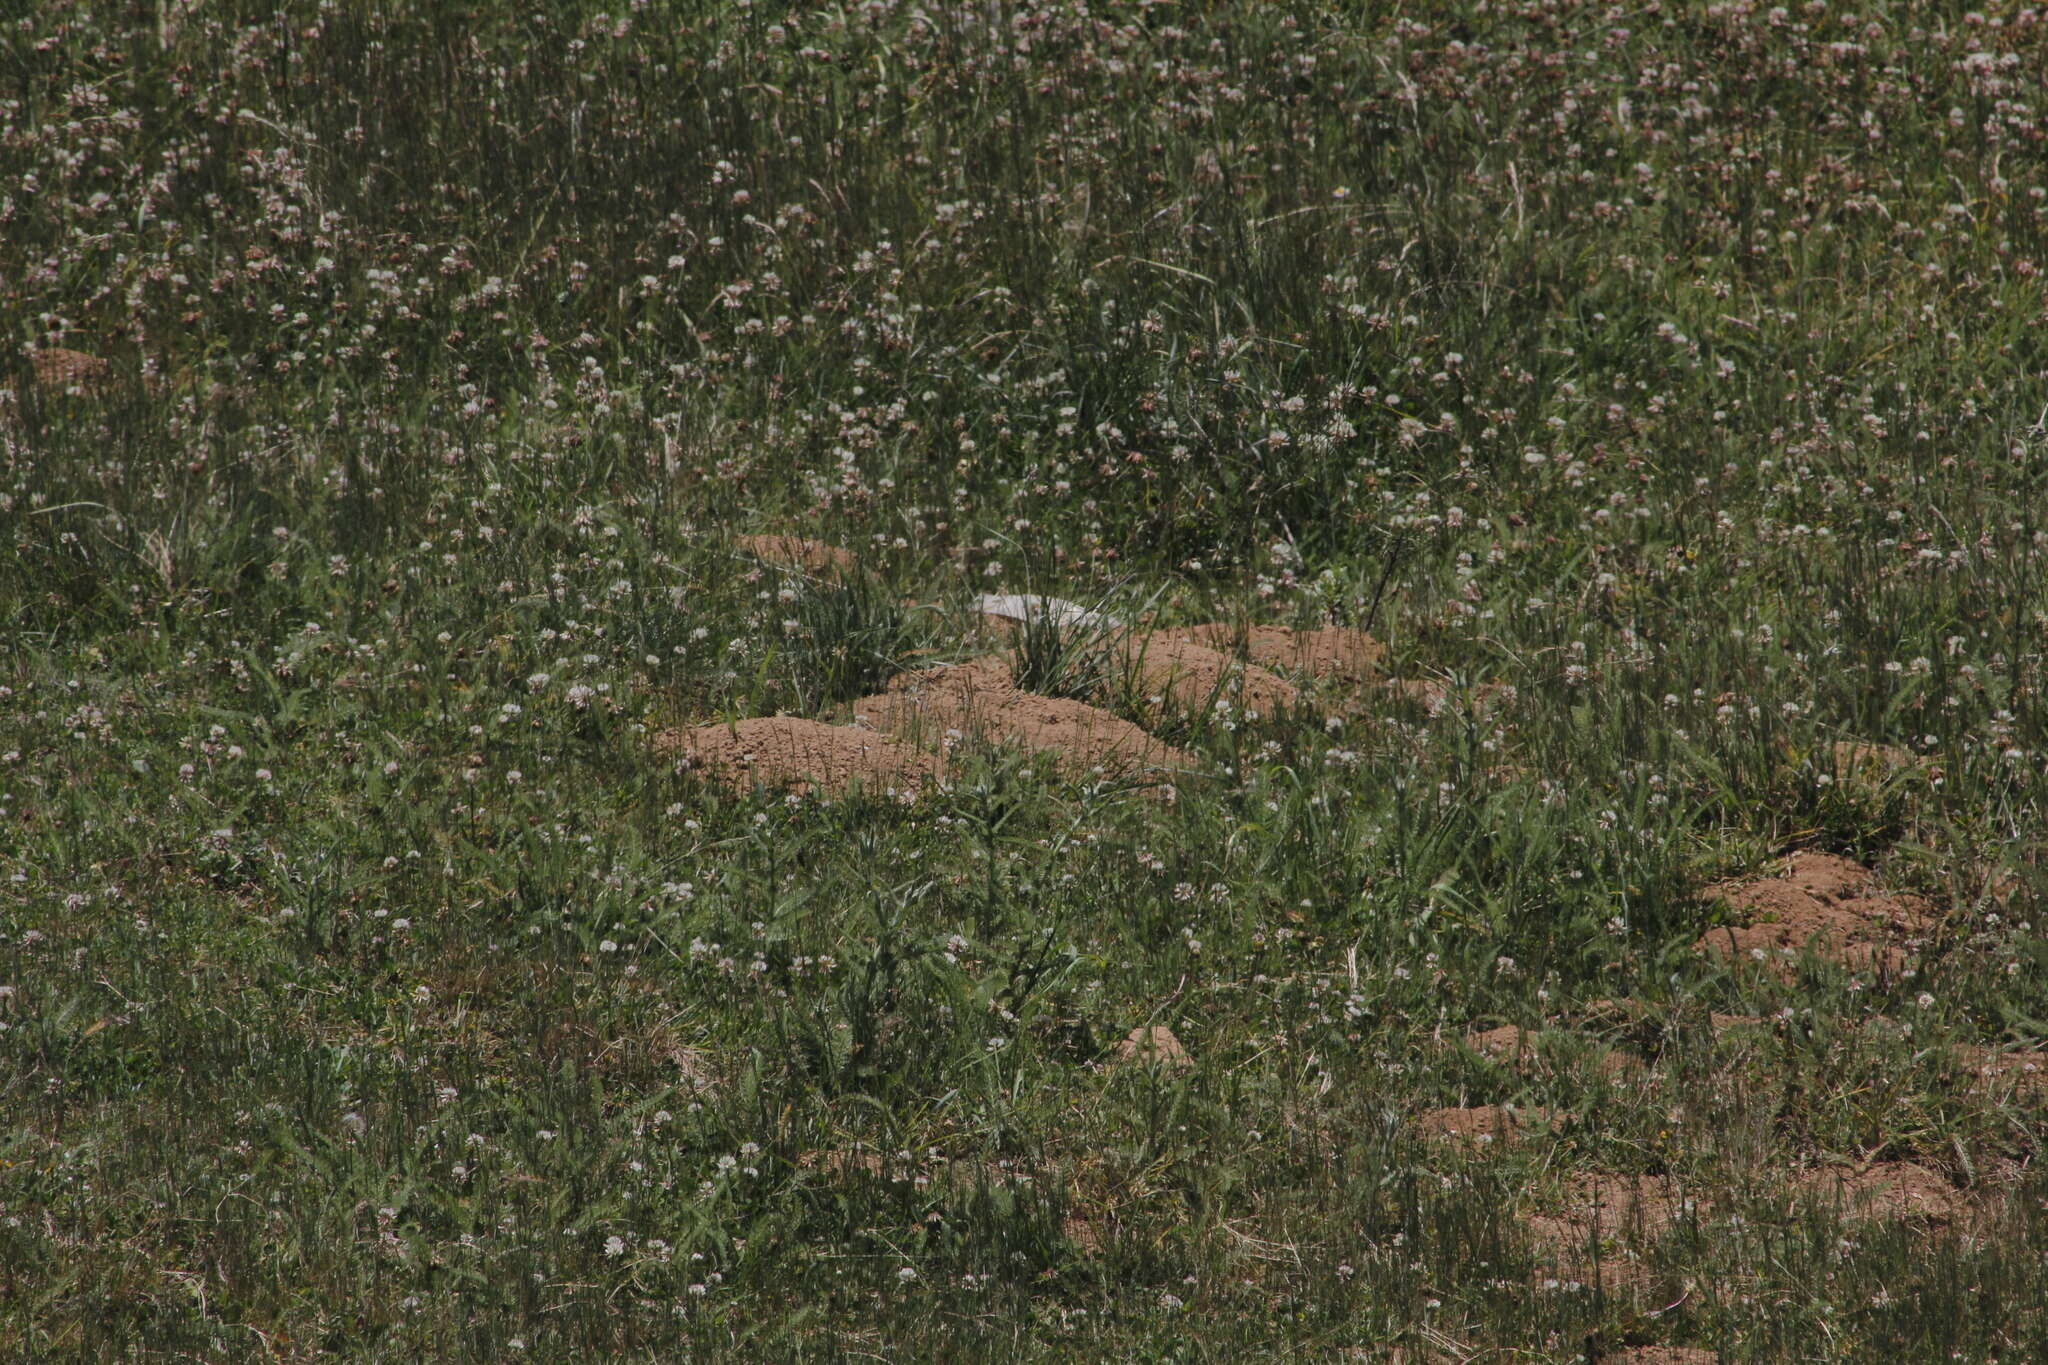 Image of Oriental Basin Pocket Gopher